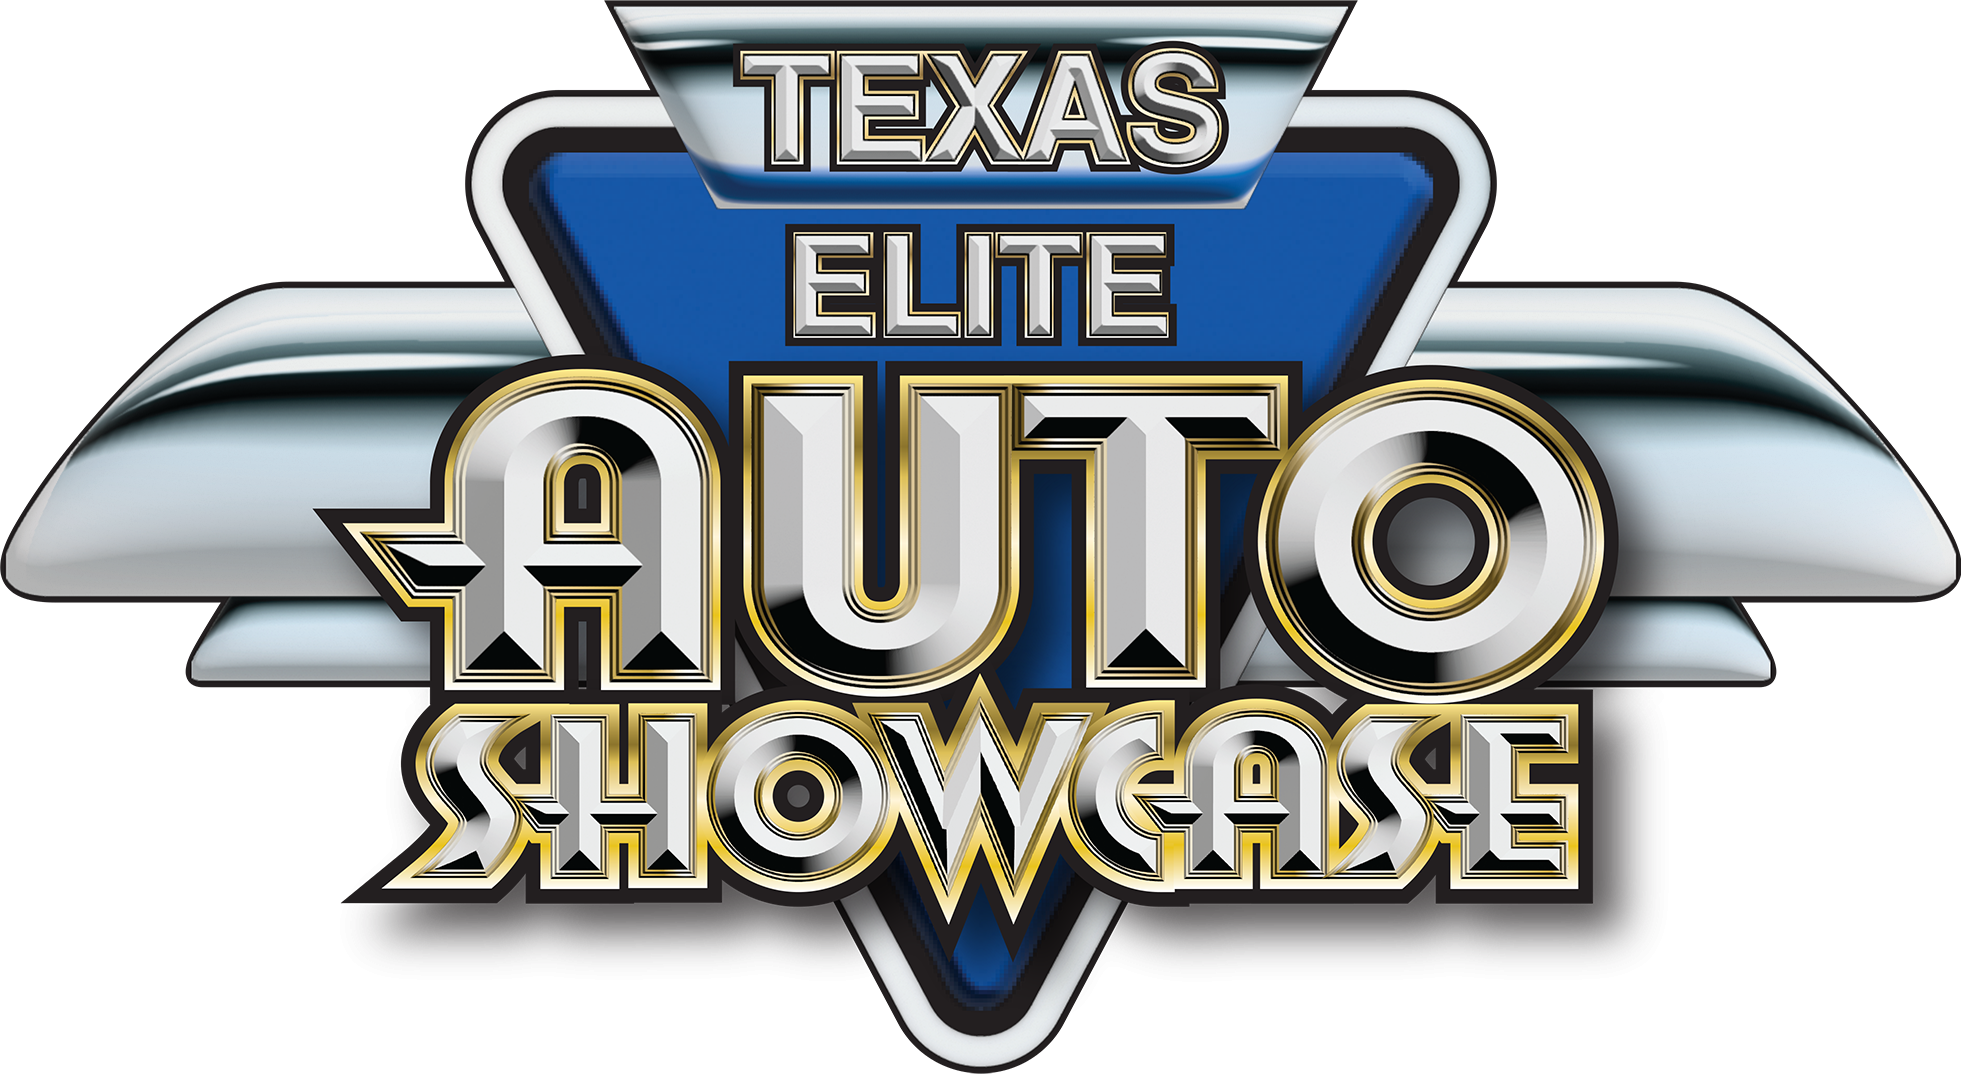 Texas Elite Auto Showcase